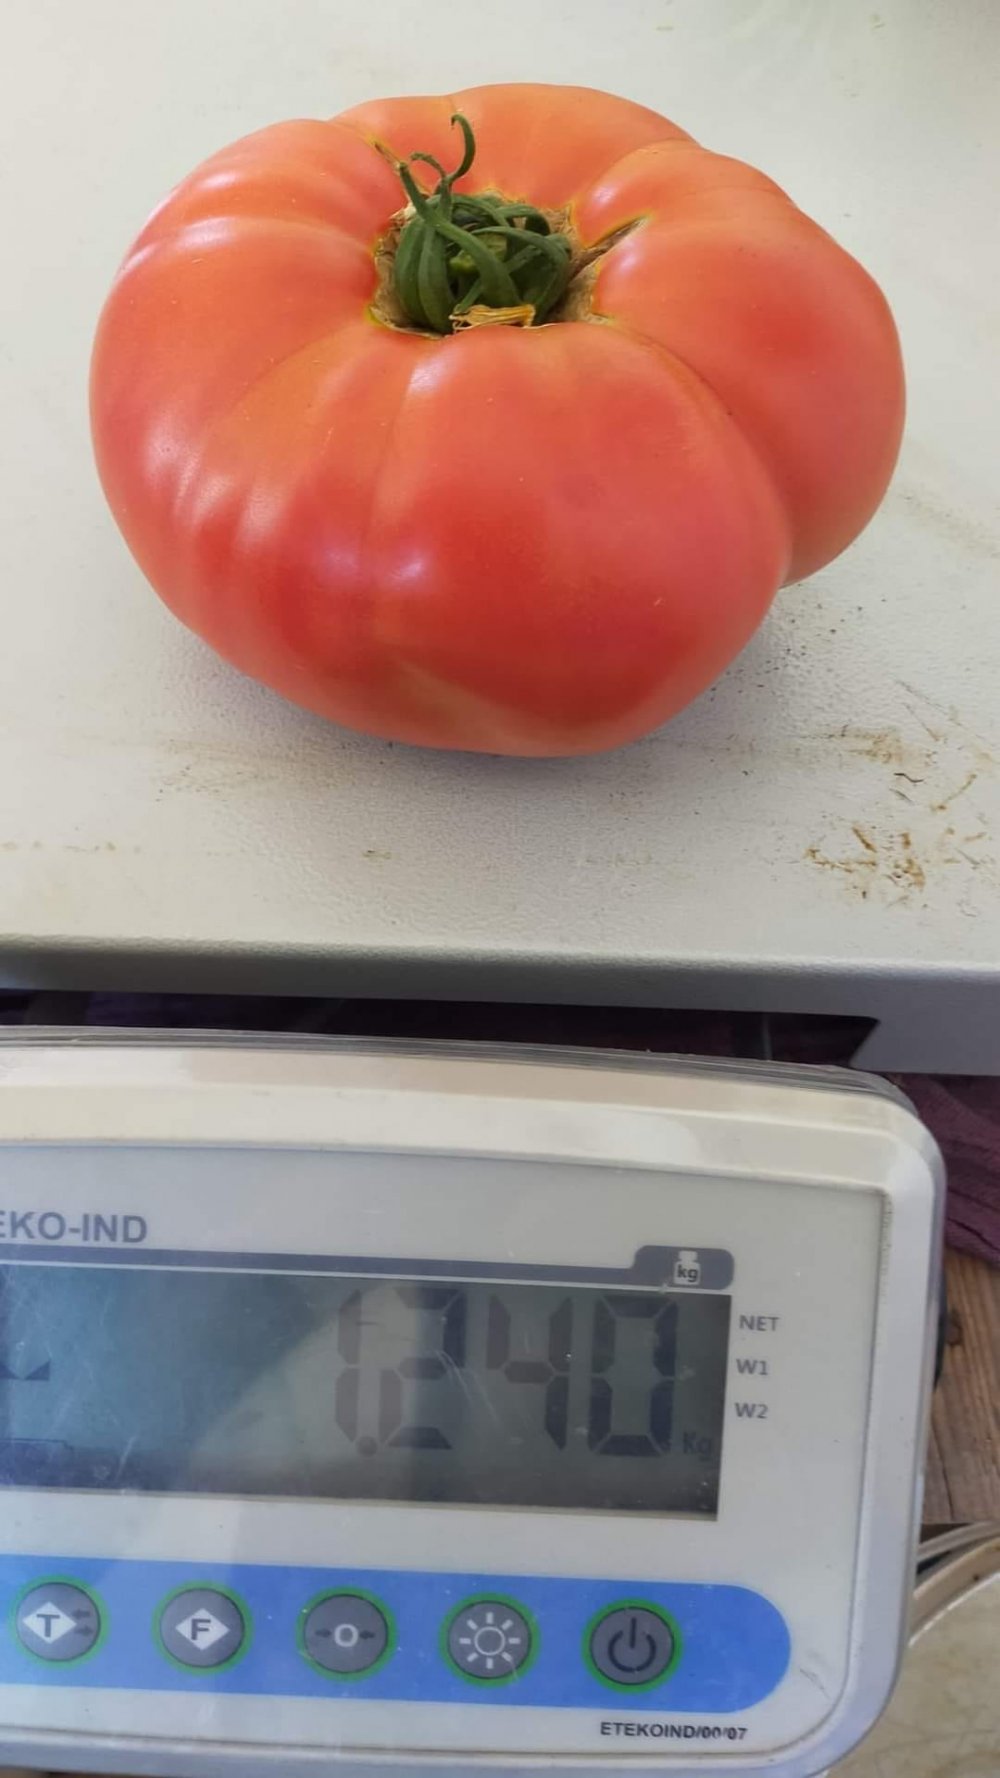 Denizli'nin Çameli İlçesi'nde 1 kilo 240 gramlık domates sosyal medyada ilgili gördü.